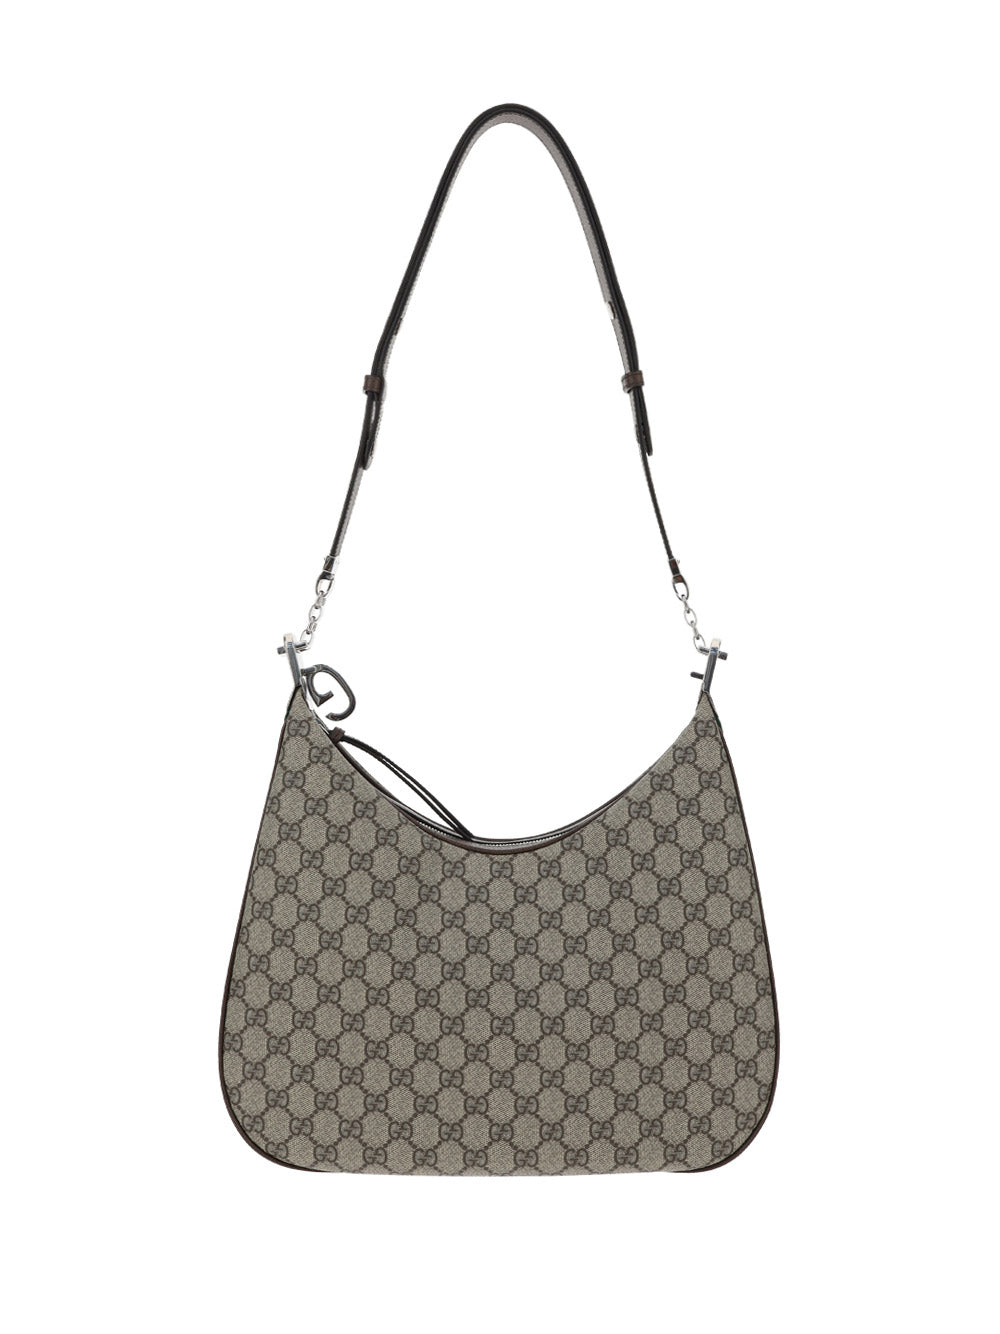 Gucci Attaché large size shoulder Bag